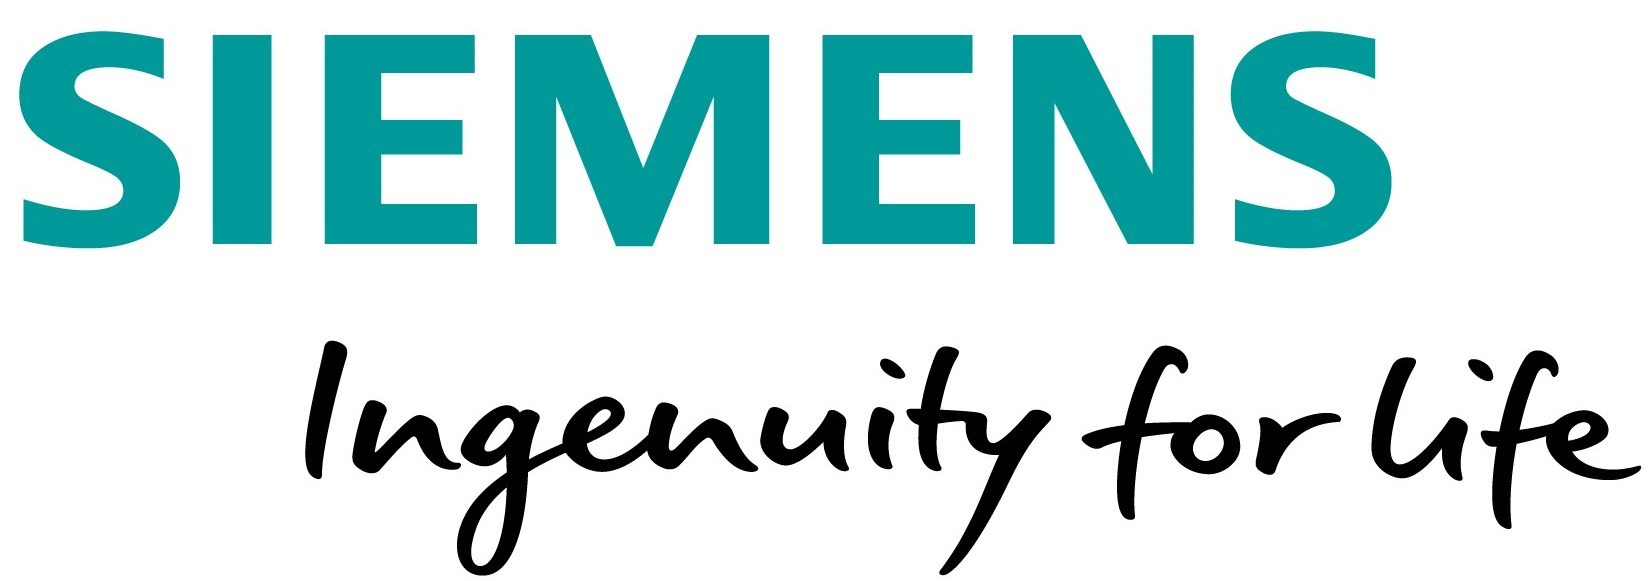 西门子 Siemens